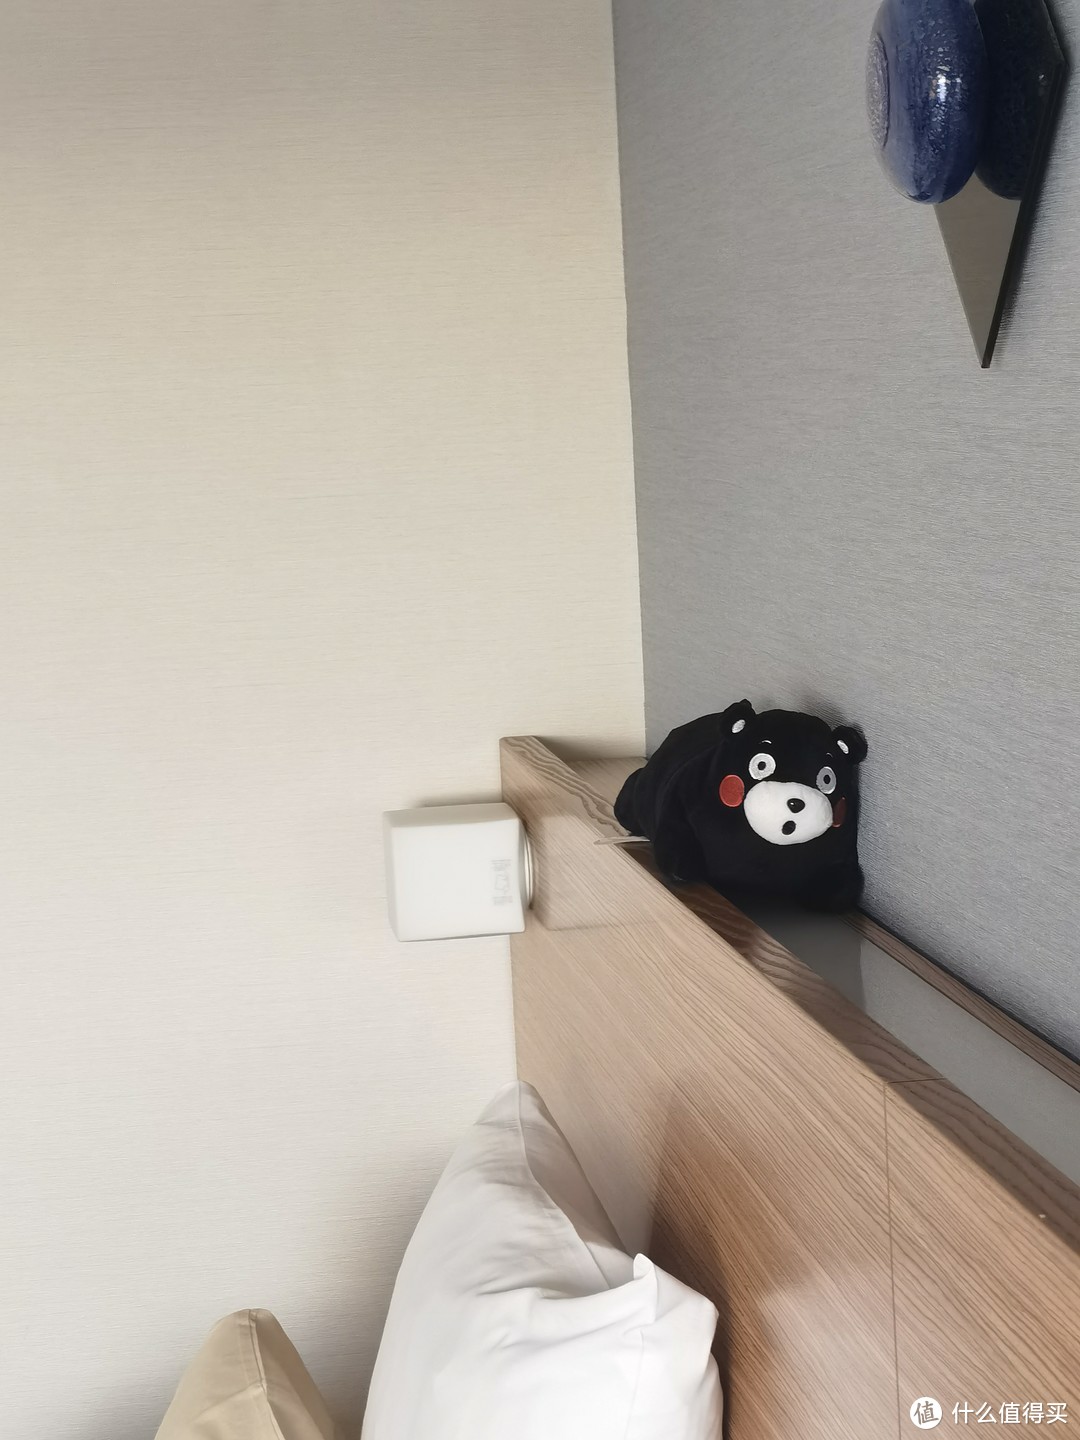 床的上面也放着一只在爬着的熊本熊小公仔